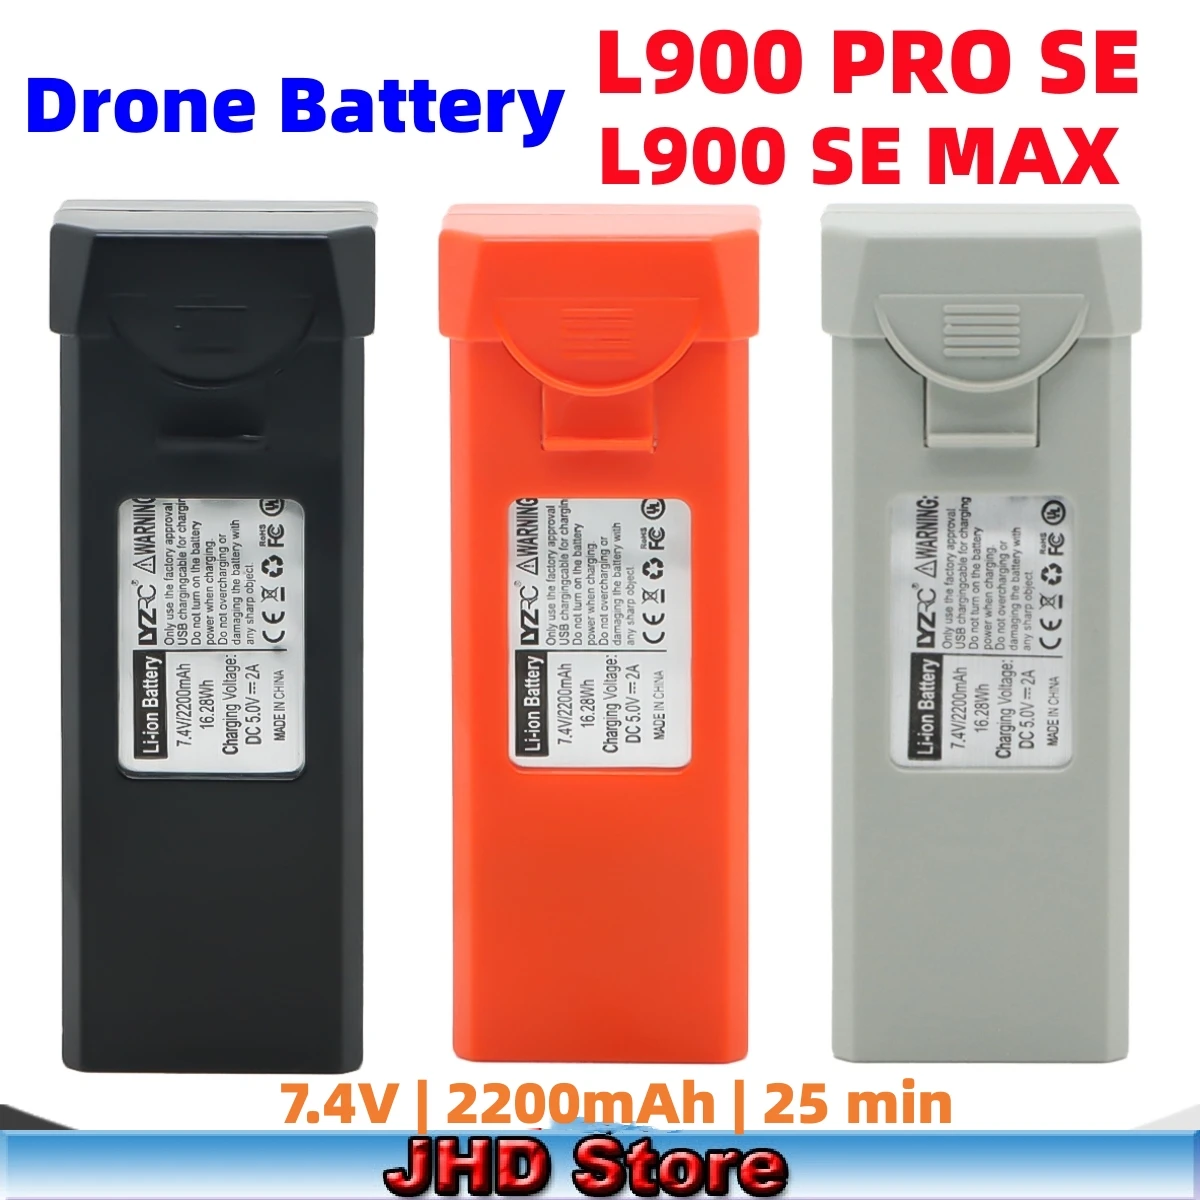 Jhd L900 Pro Se Battery L900 Pro Se Max Drone Battery For L900 Pro Se Max Drone - £20.25 GBP+